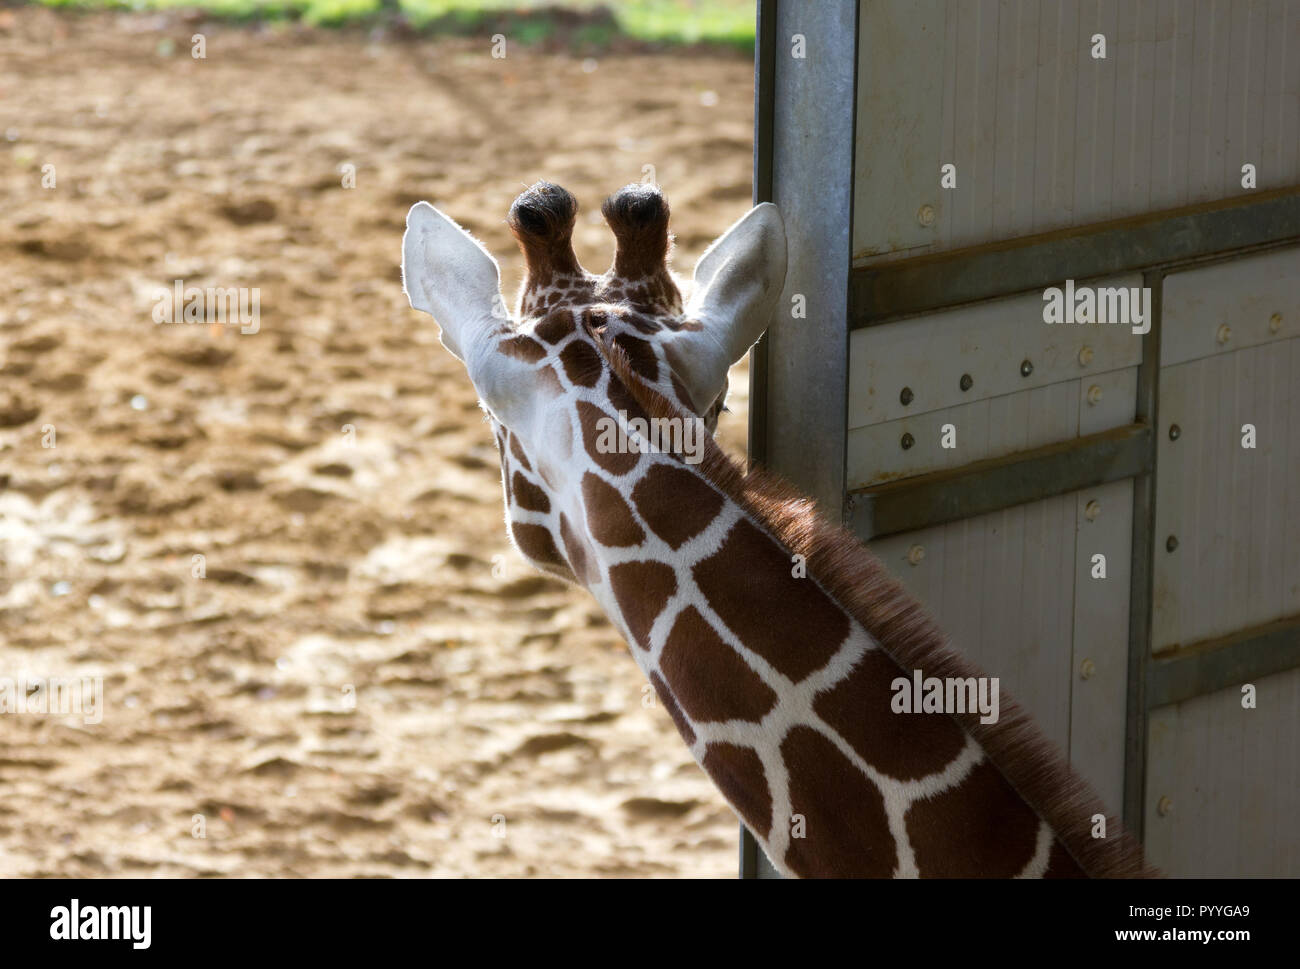 Young Giraffe (Giraffa camelopardalis) at a zoological park Stock Photo